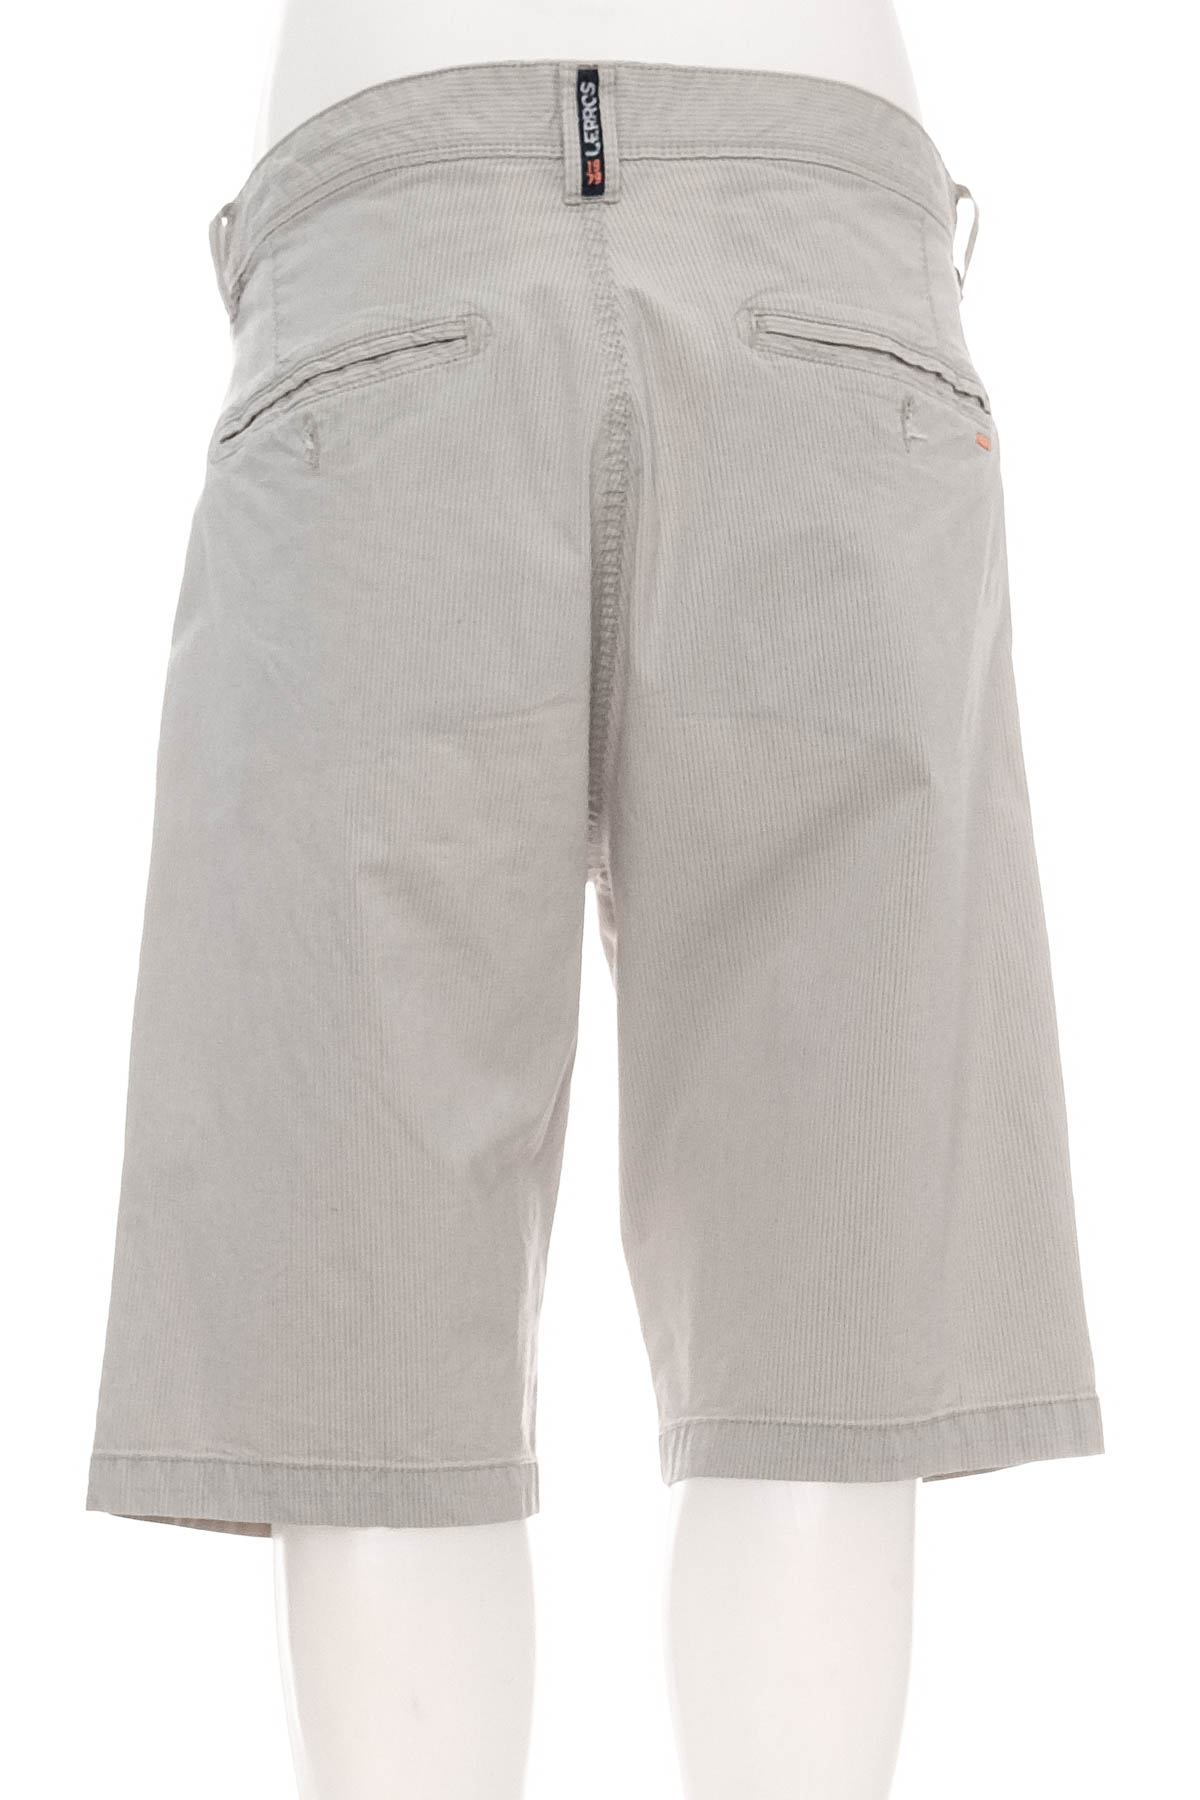 Pantaloni scurți bărbați - Lerros - 1